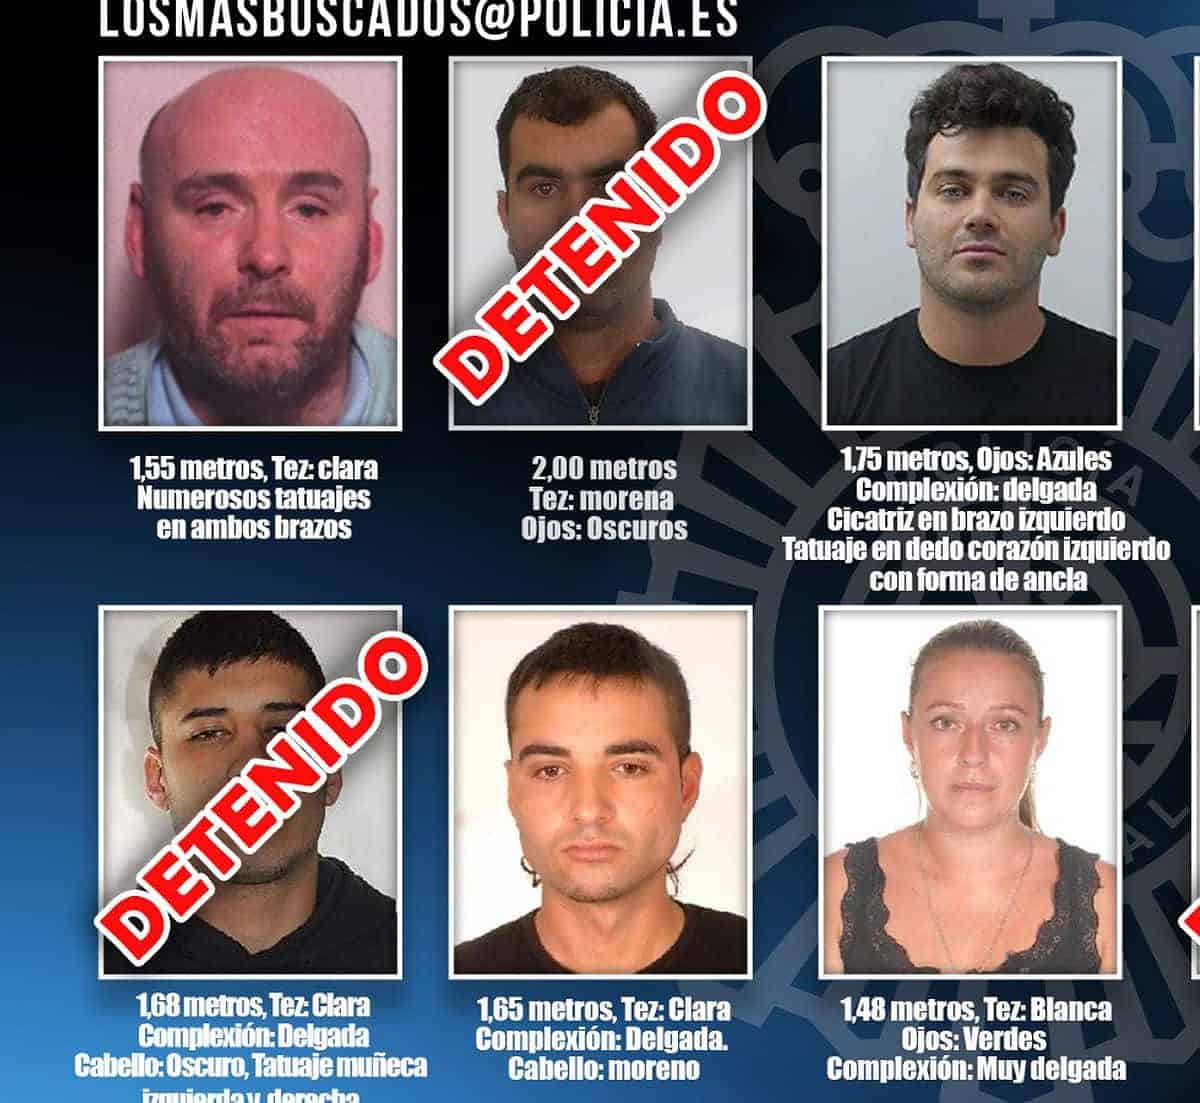 informacion de detenciones en espana